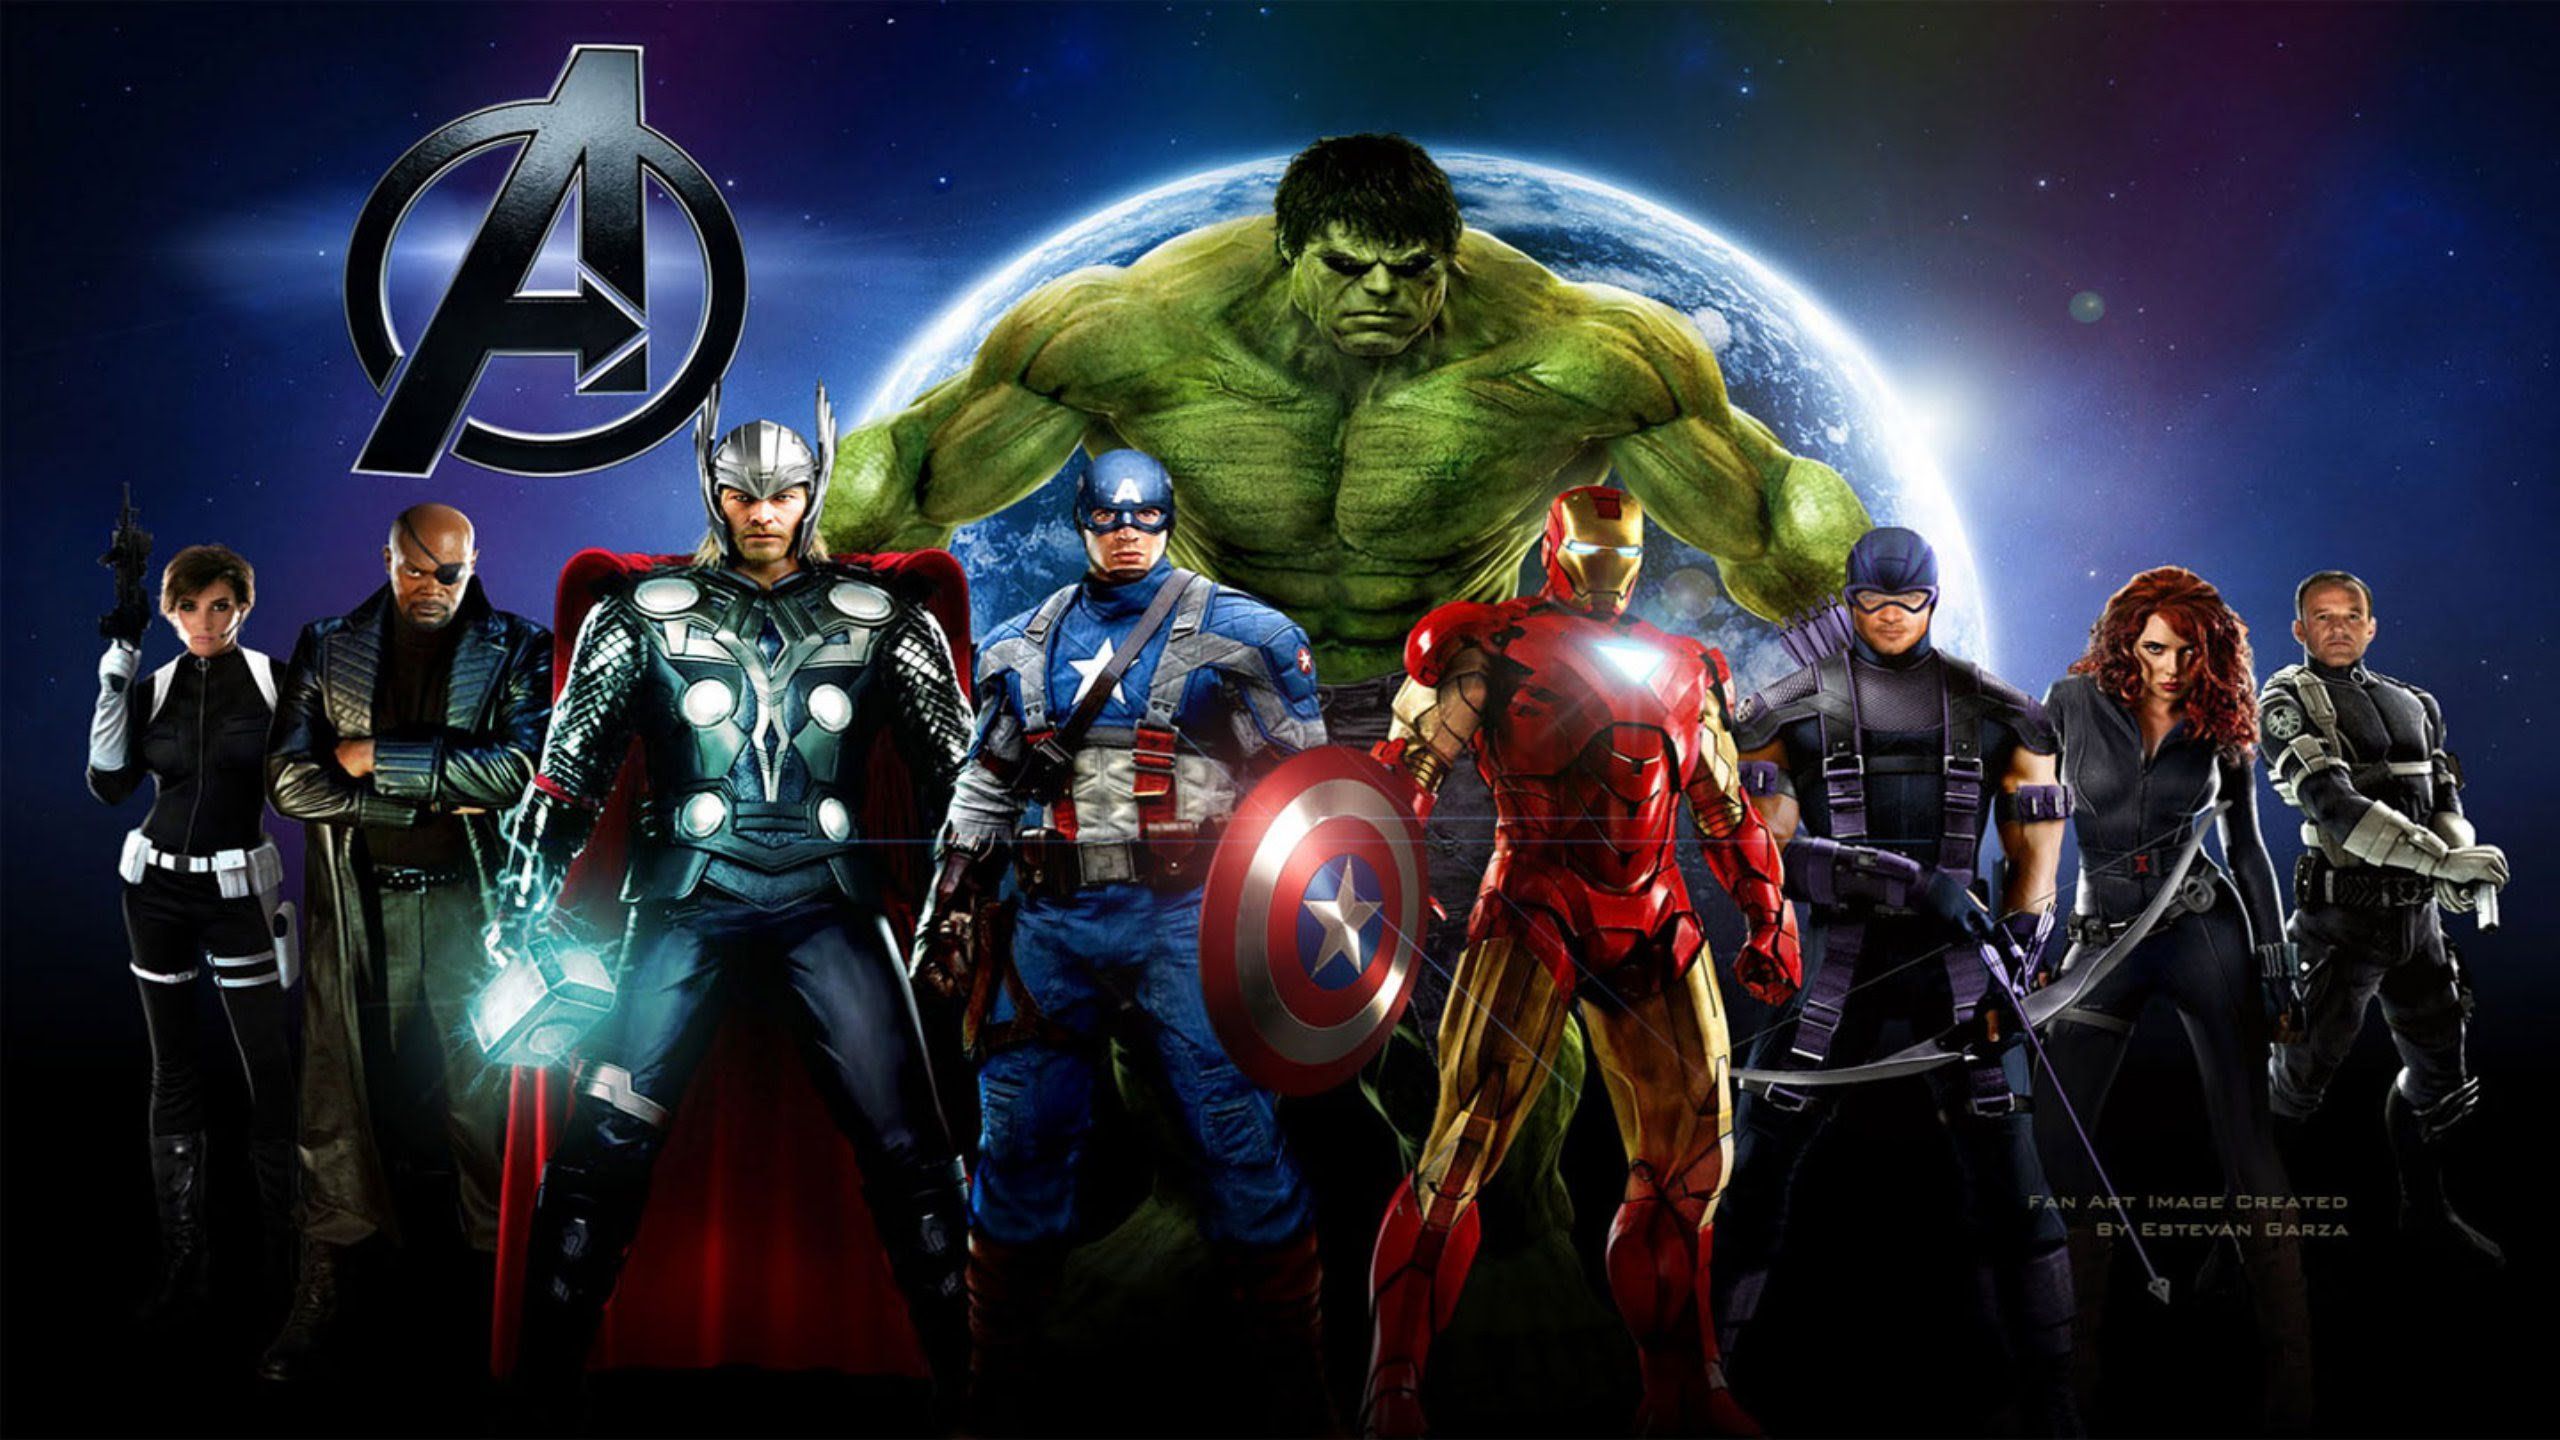 Cartoons Avengers comics Marvel Comics wallpaper | 1440x900 ...